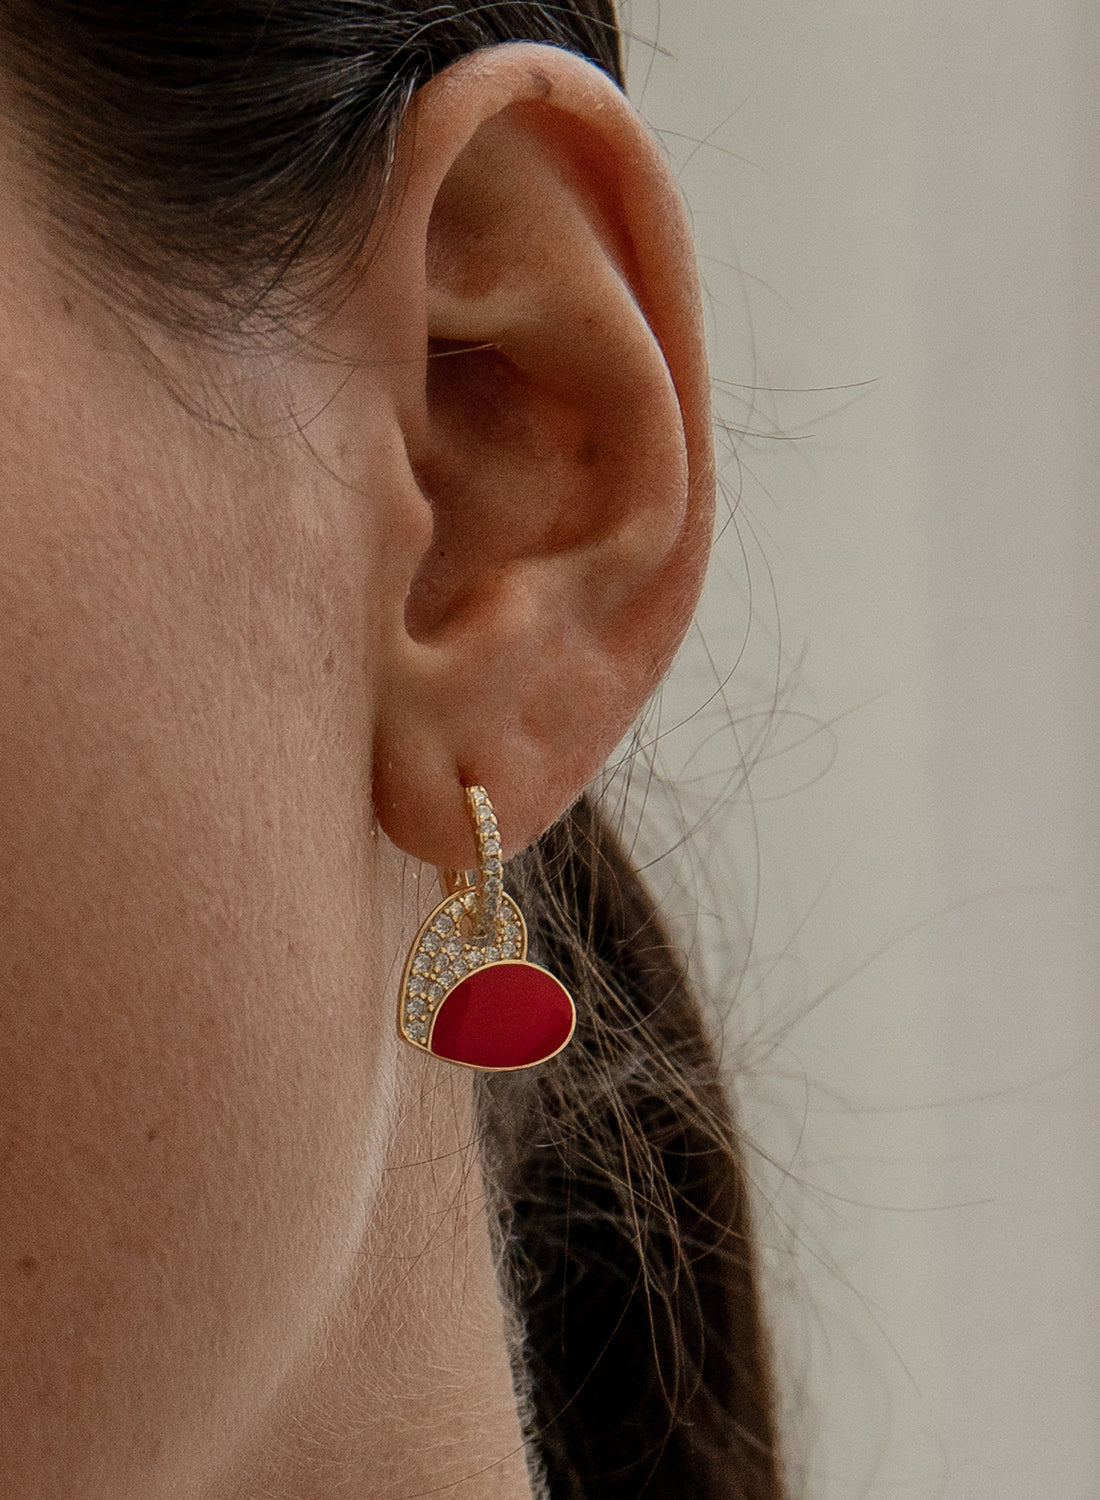 Earrings - Red enamel heart design pendant earrings